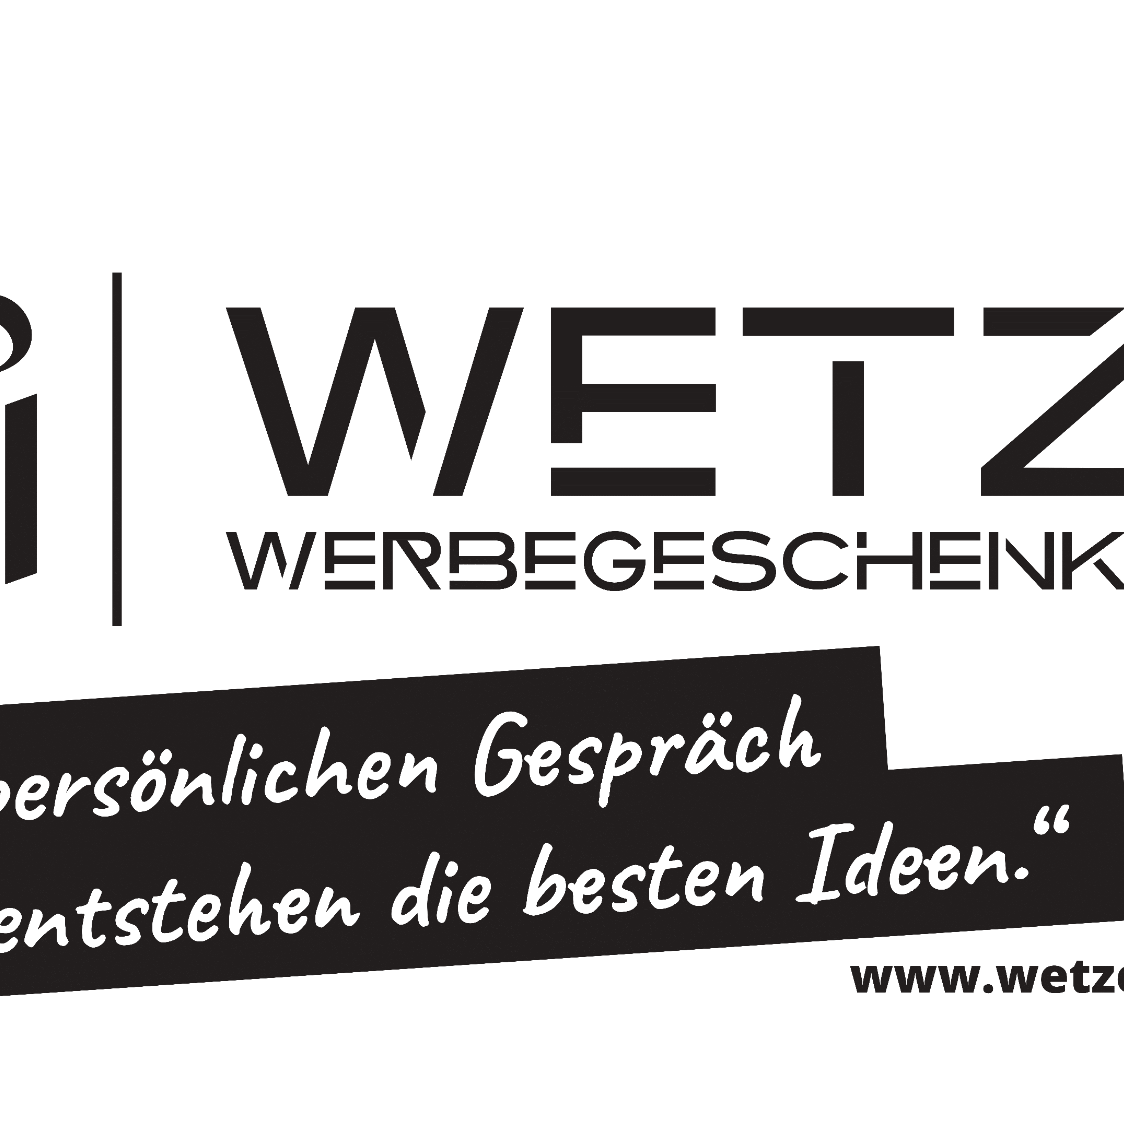 Bild 2 Wetzel Werbegeschenke GmbH in Mutterstadt